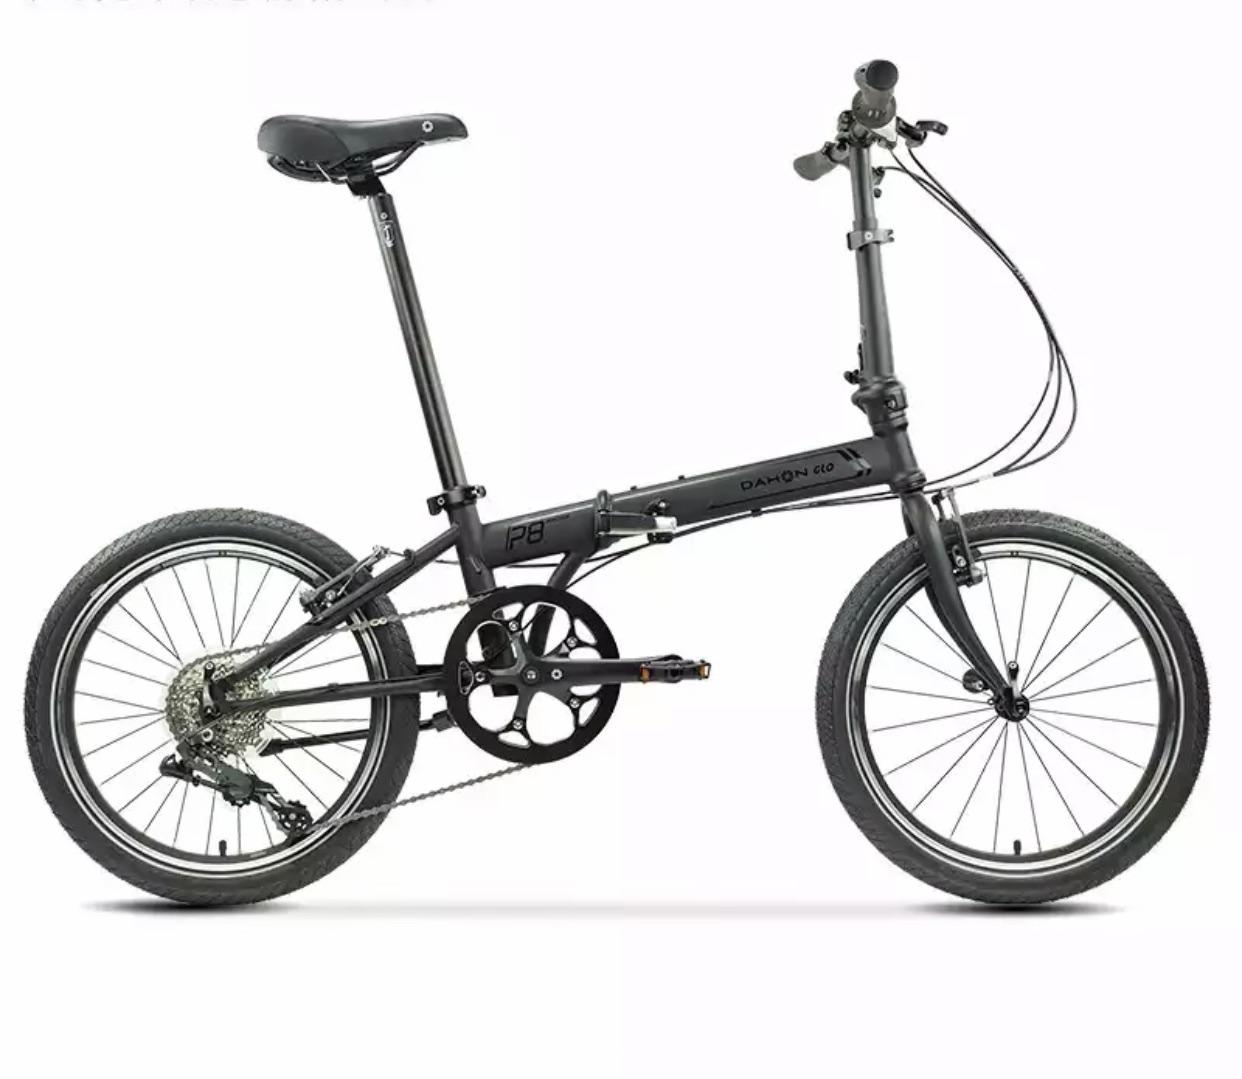 2021年大行折叠自行车推荐,品牌清单!折叠车哪个牌子好?